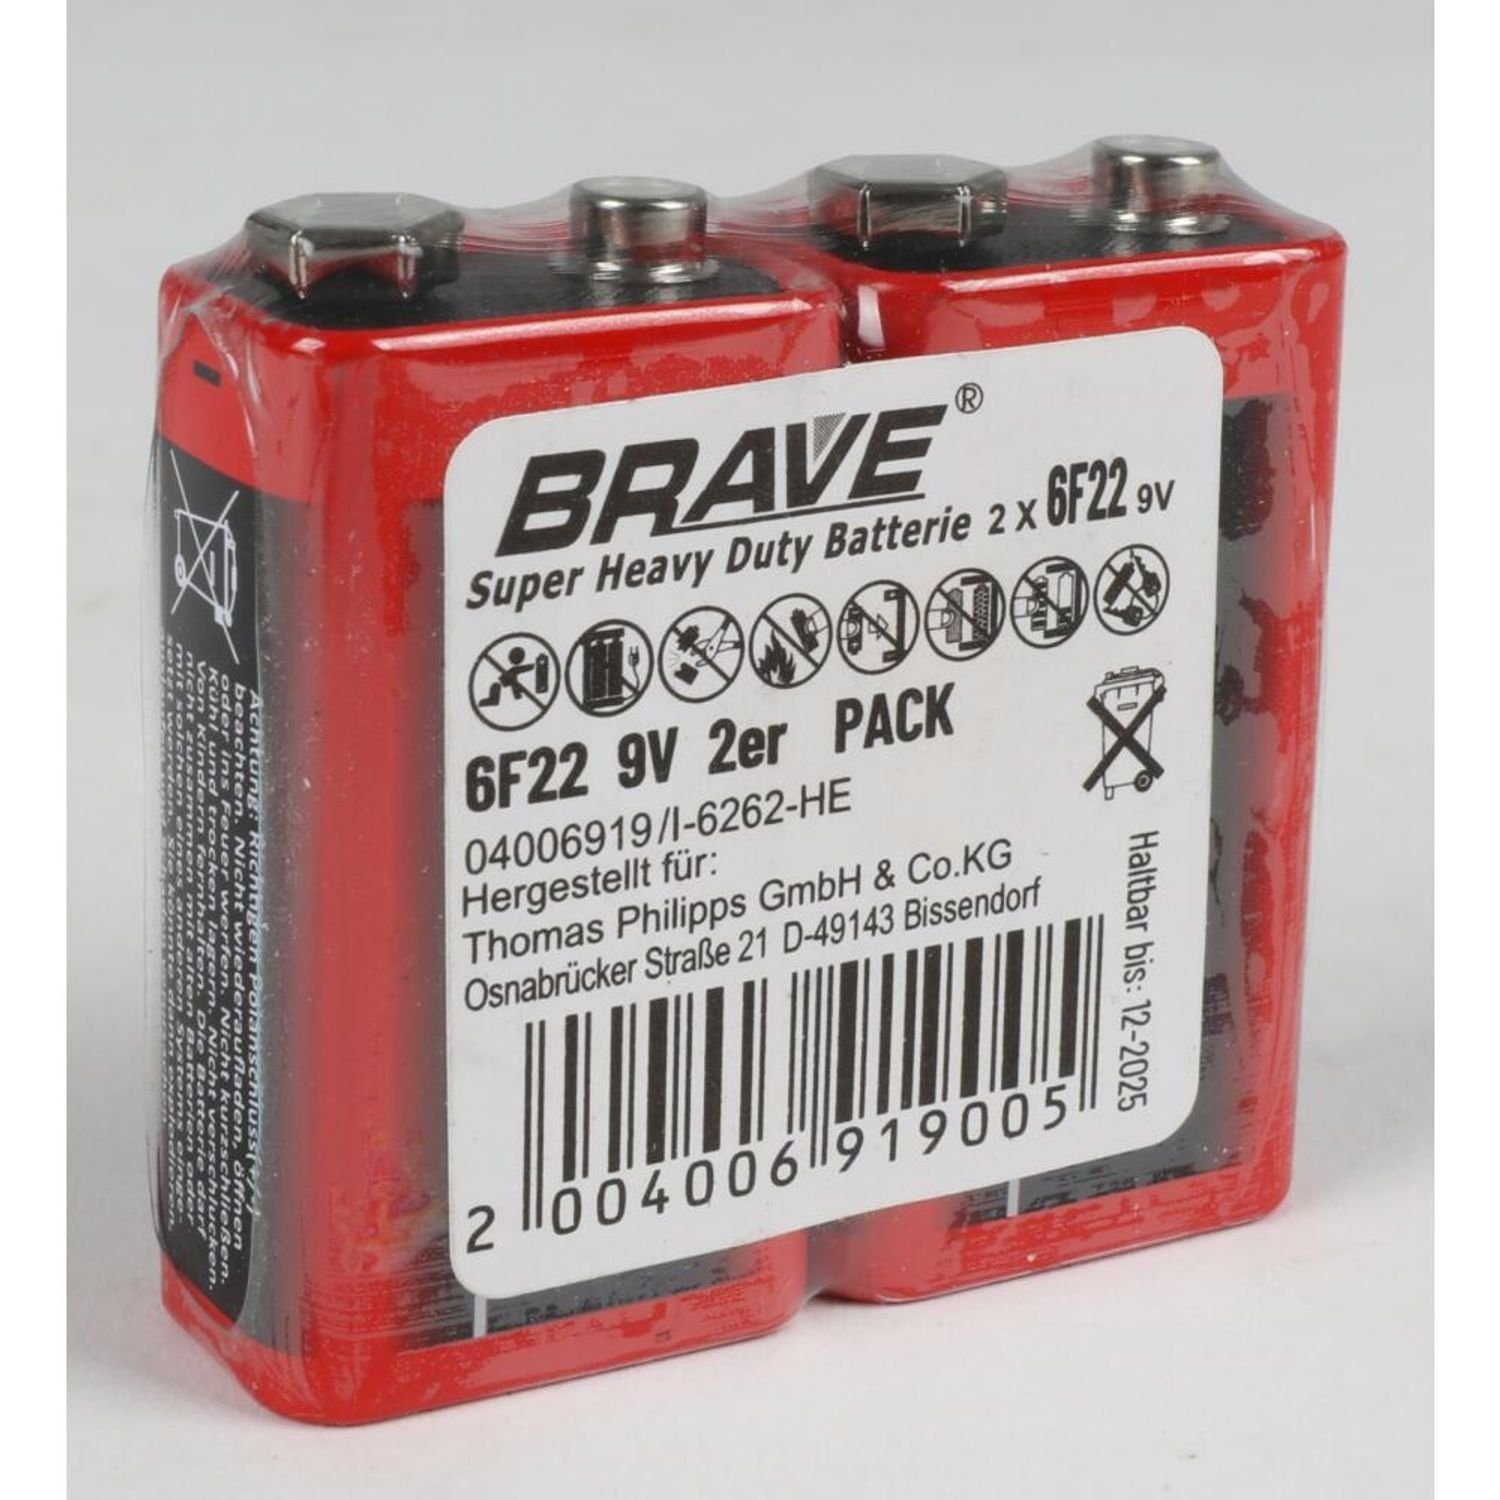 Brave Strom (20 BURI Universal 9V 10x Stark 6F22 Batterien St) Industrial Super 2er Batterie,